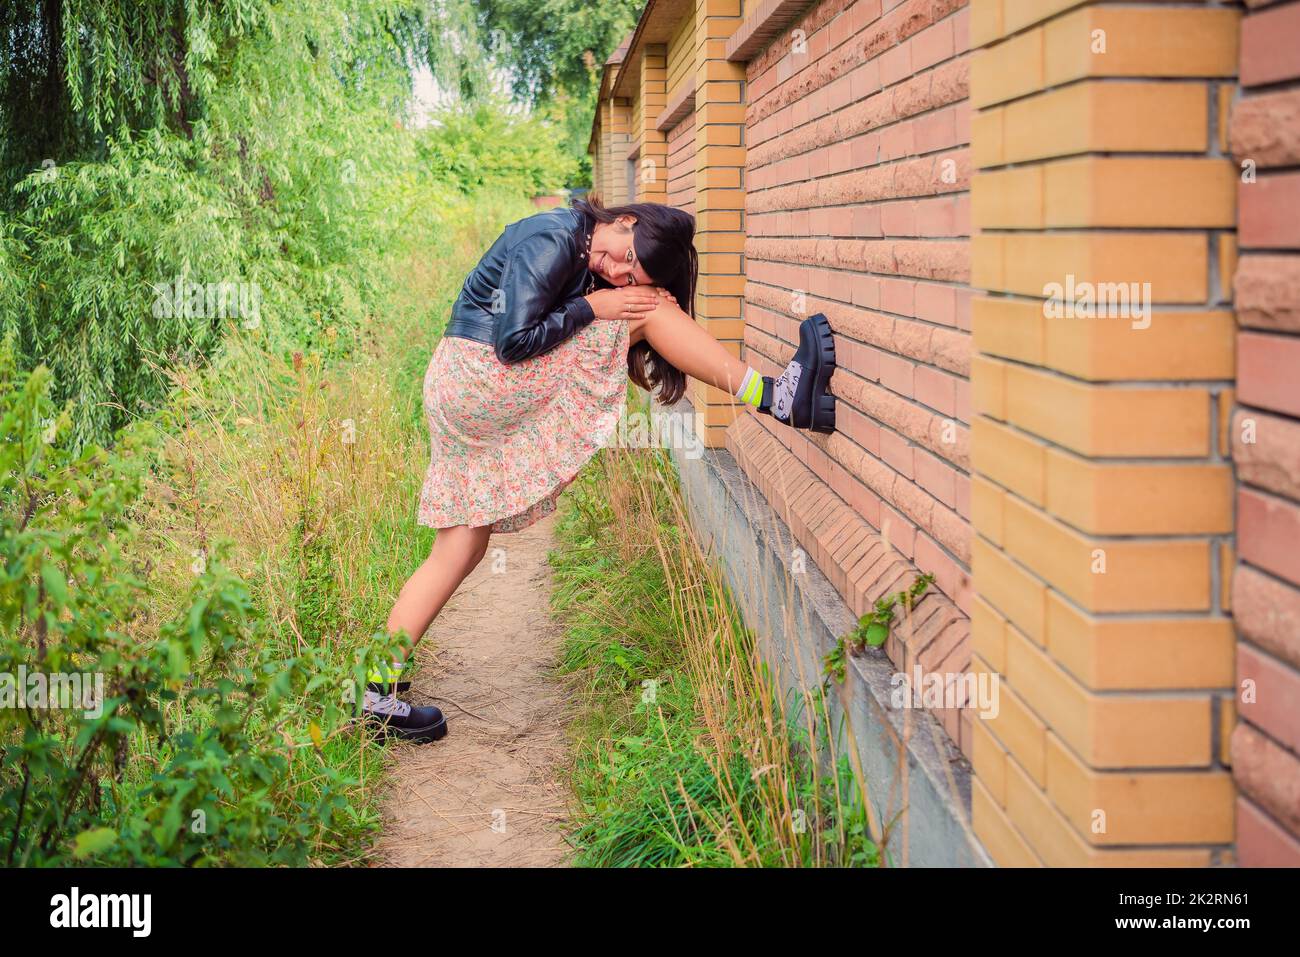 Una joven puso su pie sobre una valla de ladrillo en el parque Foto de stock